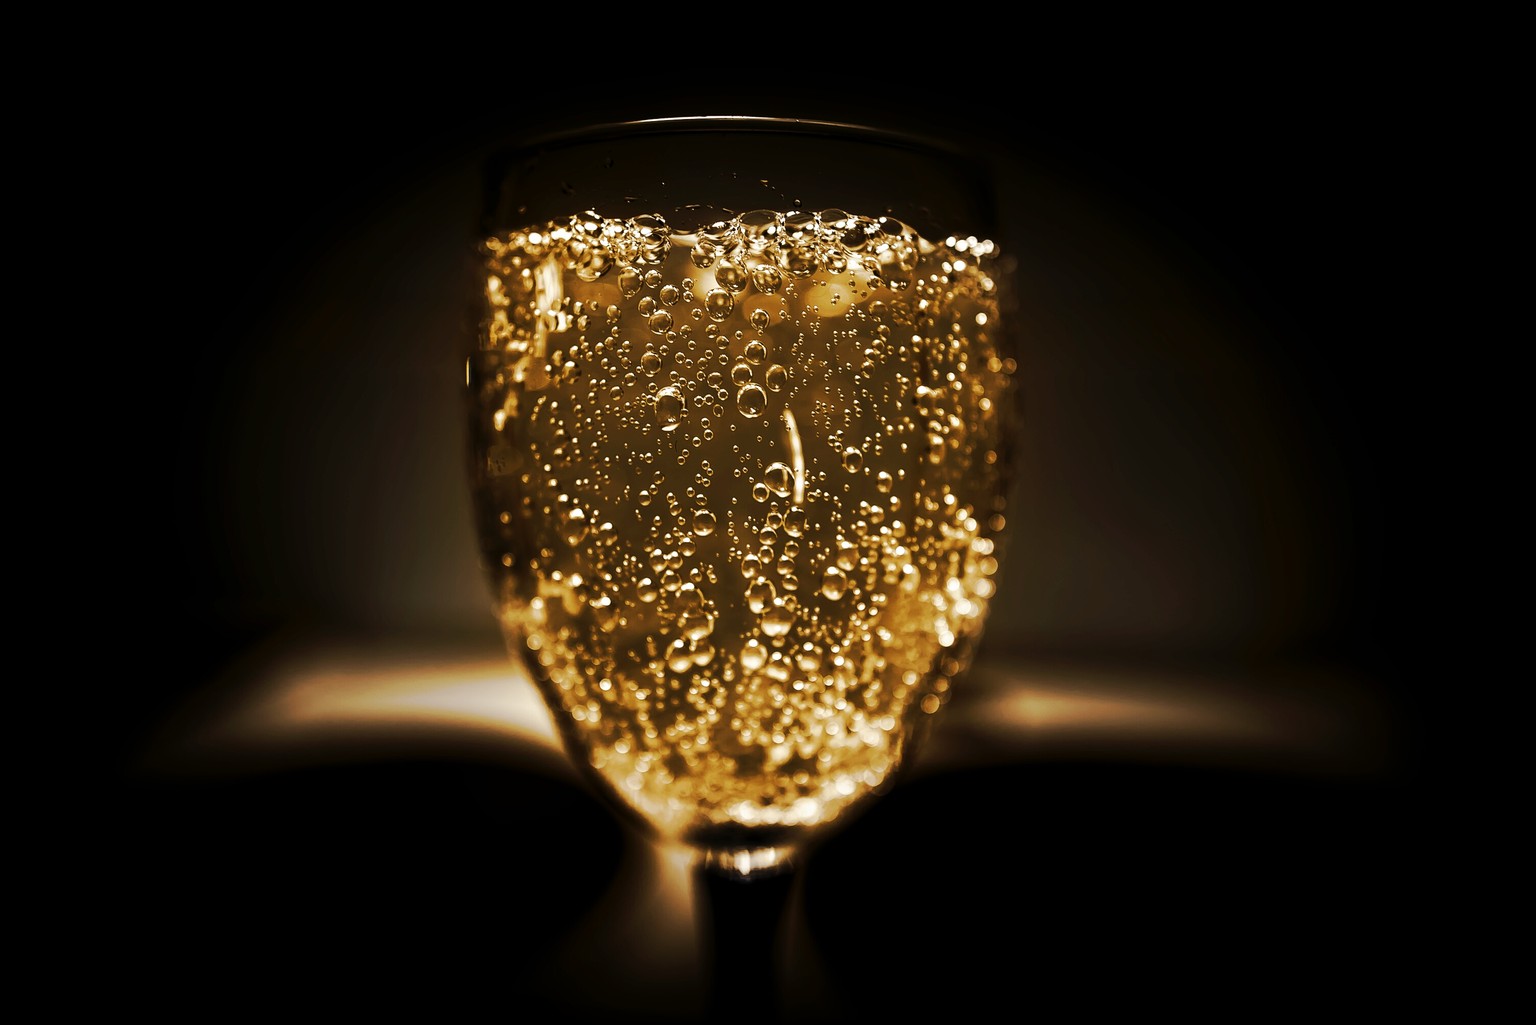 Vor dem zu Bett gehen, gönnt sich Queen Elizabeth jeweils ein Gläschen Champagner – am liebsten von den Marken Bollinger, Lanson oder Krug.&nbsp;